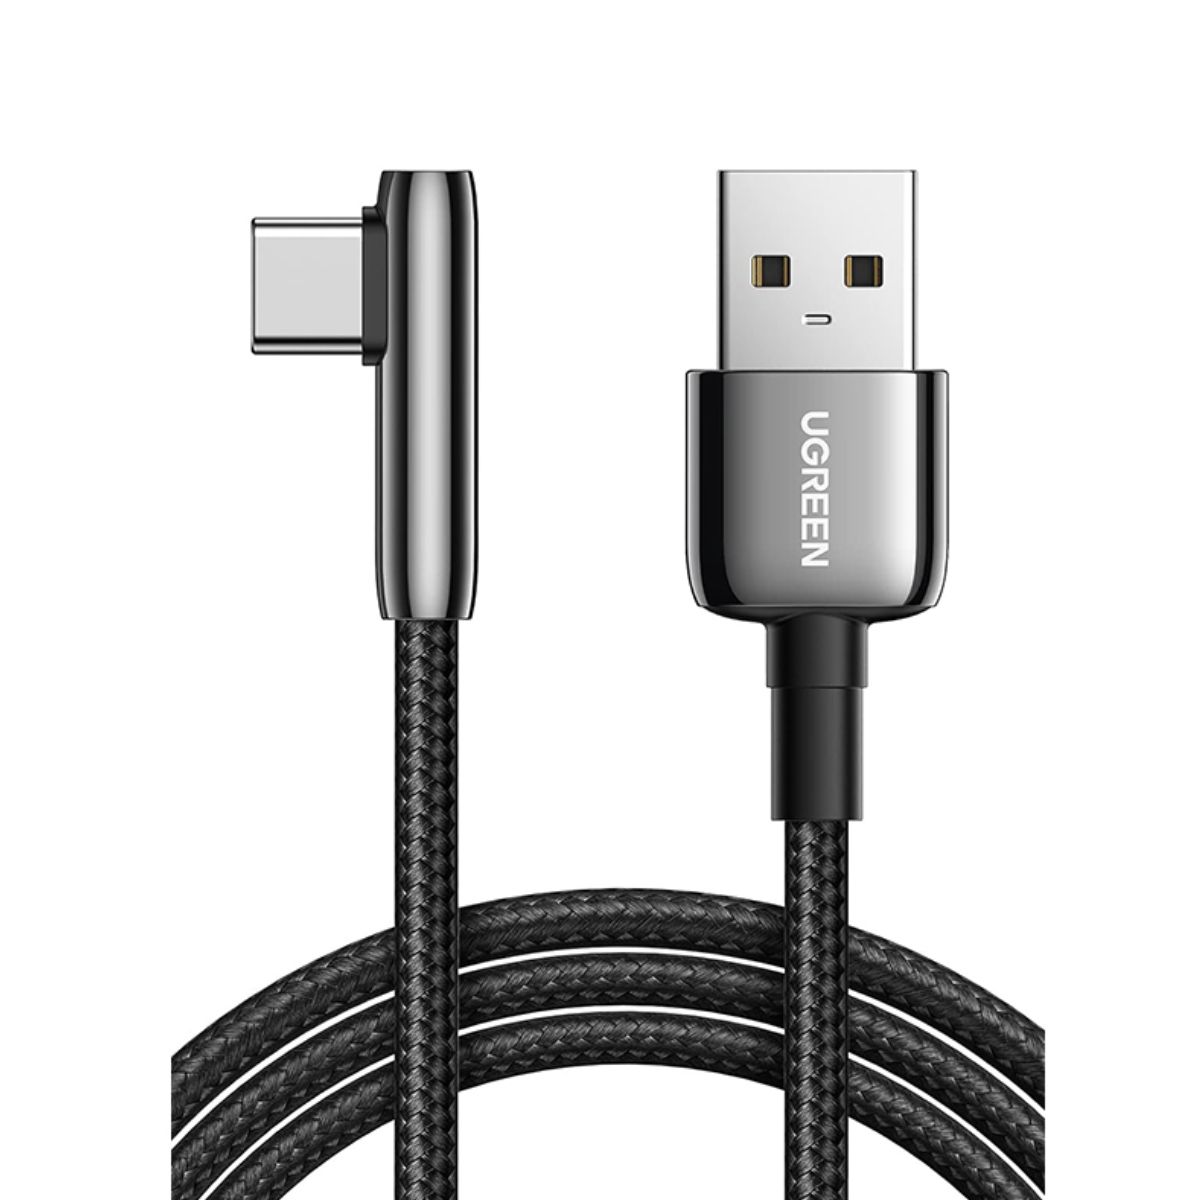 Cáp dài 2m USB Type-C bẻ góc Ugreen US313, 70415 màu đen, vỏ hợp kim kẽm